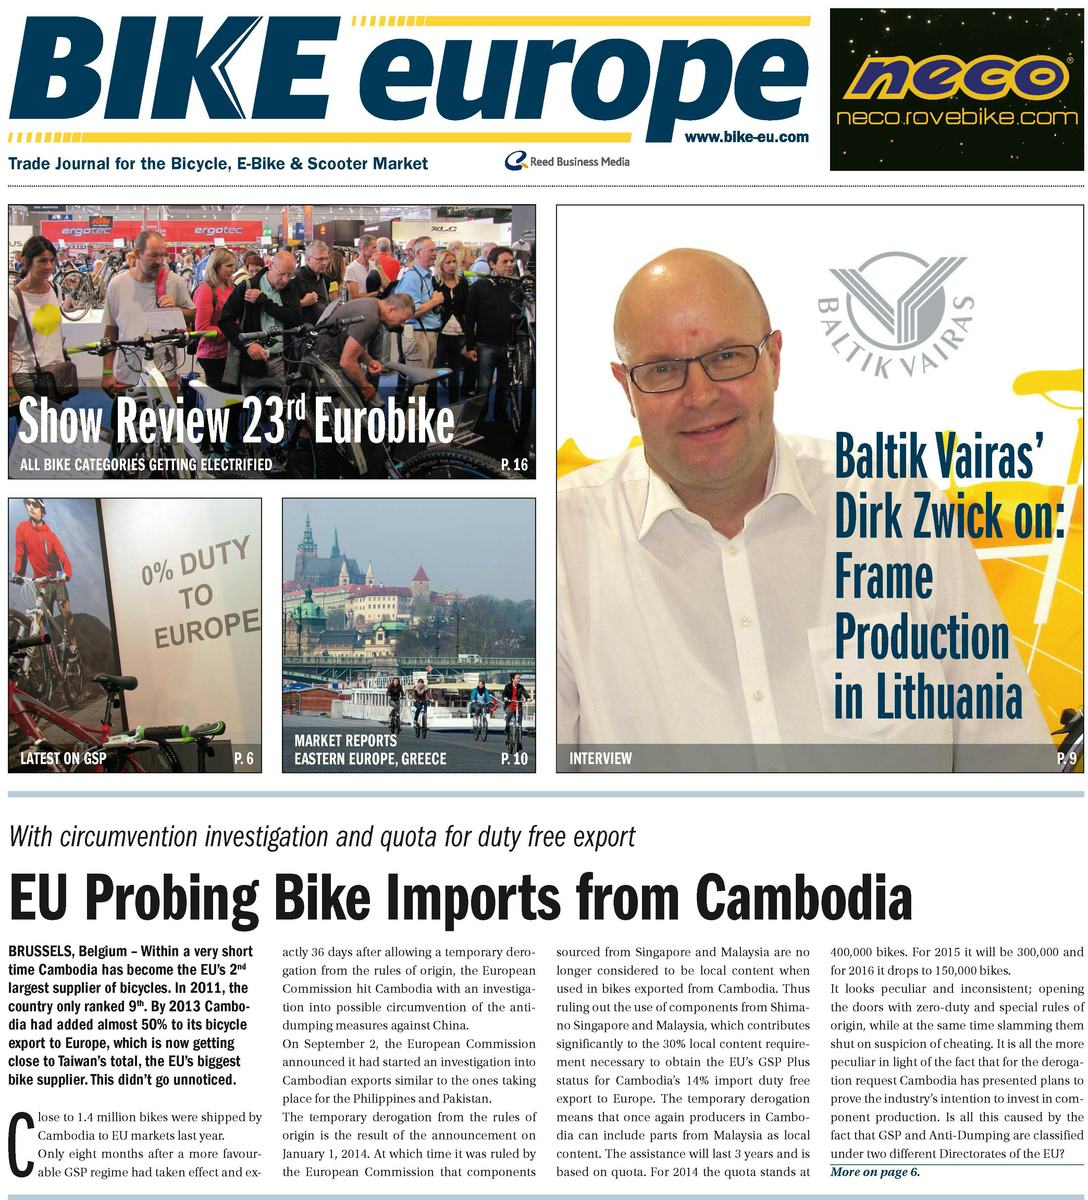 Read Bike Europe’s Online. - Photo Bike Europe